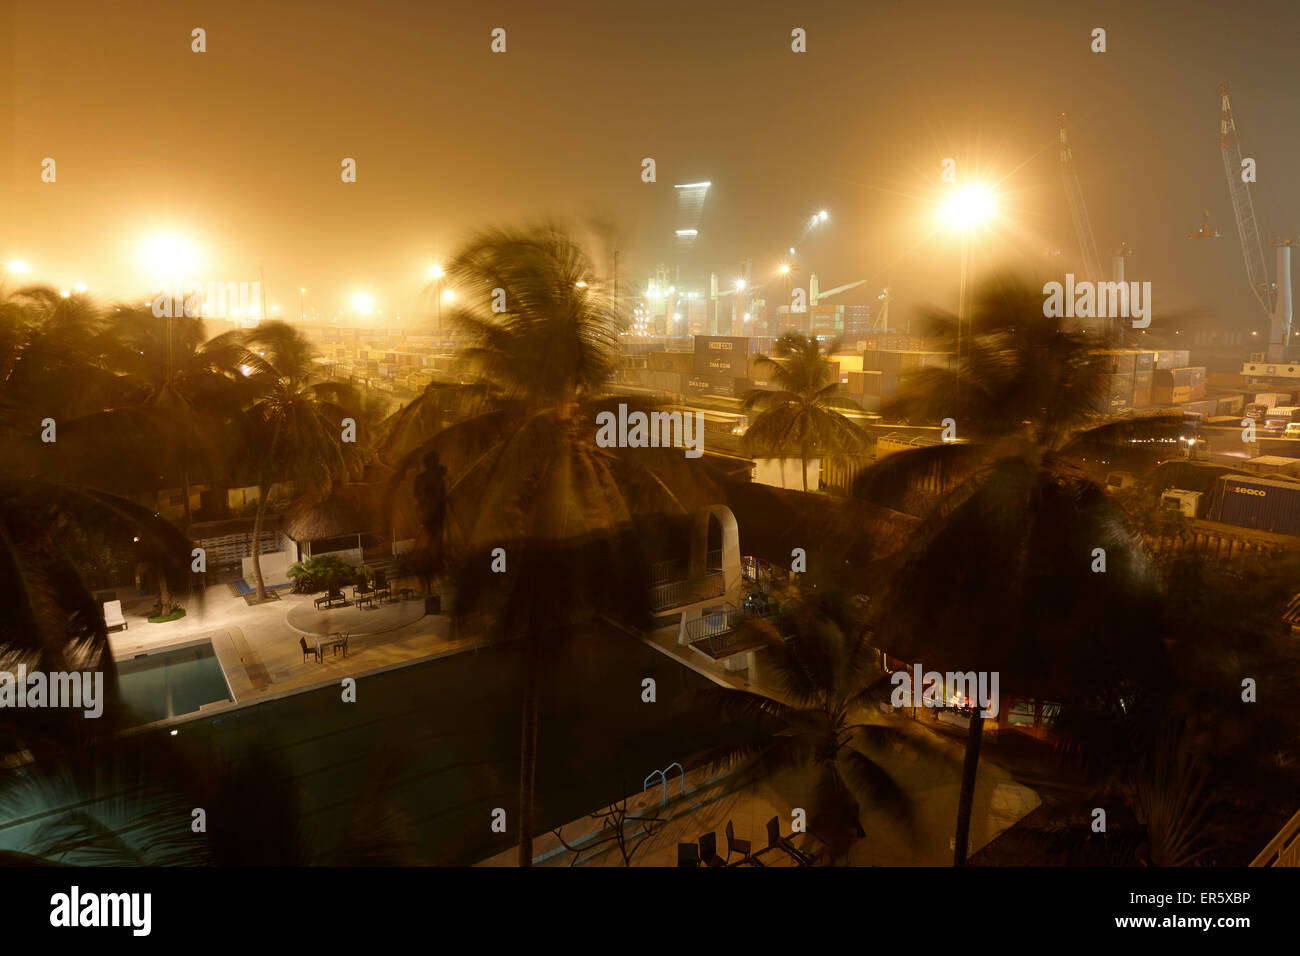 Piscine d'un hôtel, le port de départ en arrière-plan, Cotonou, Bénin Banque D'Images